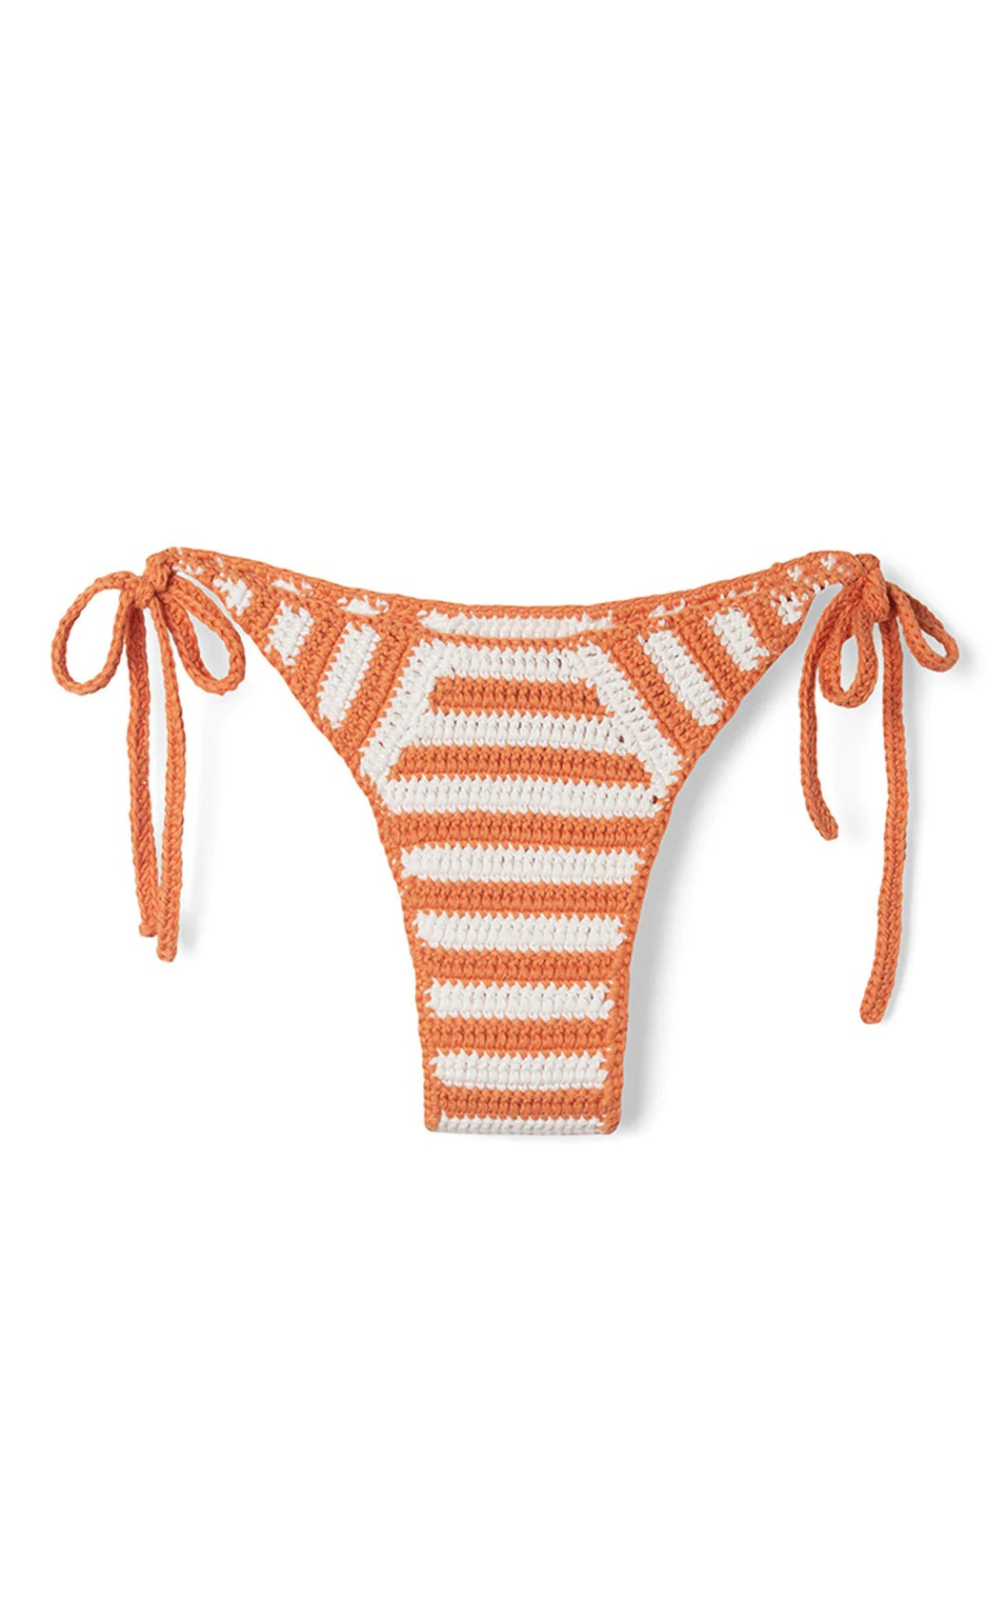 Cotton Crochet Brief - Tangerine